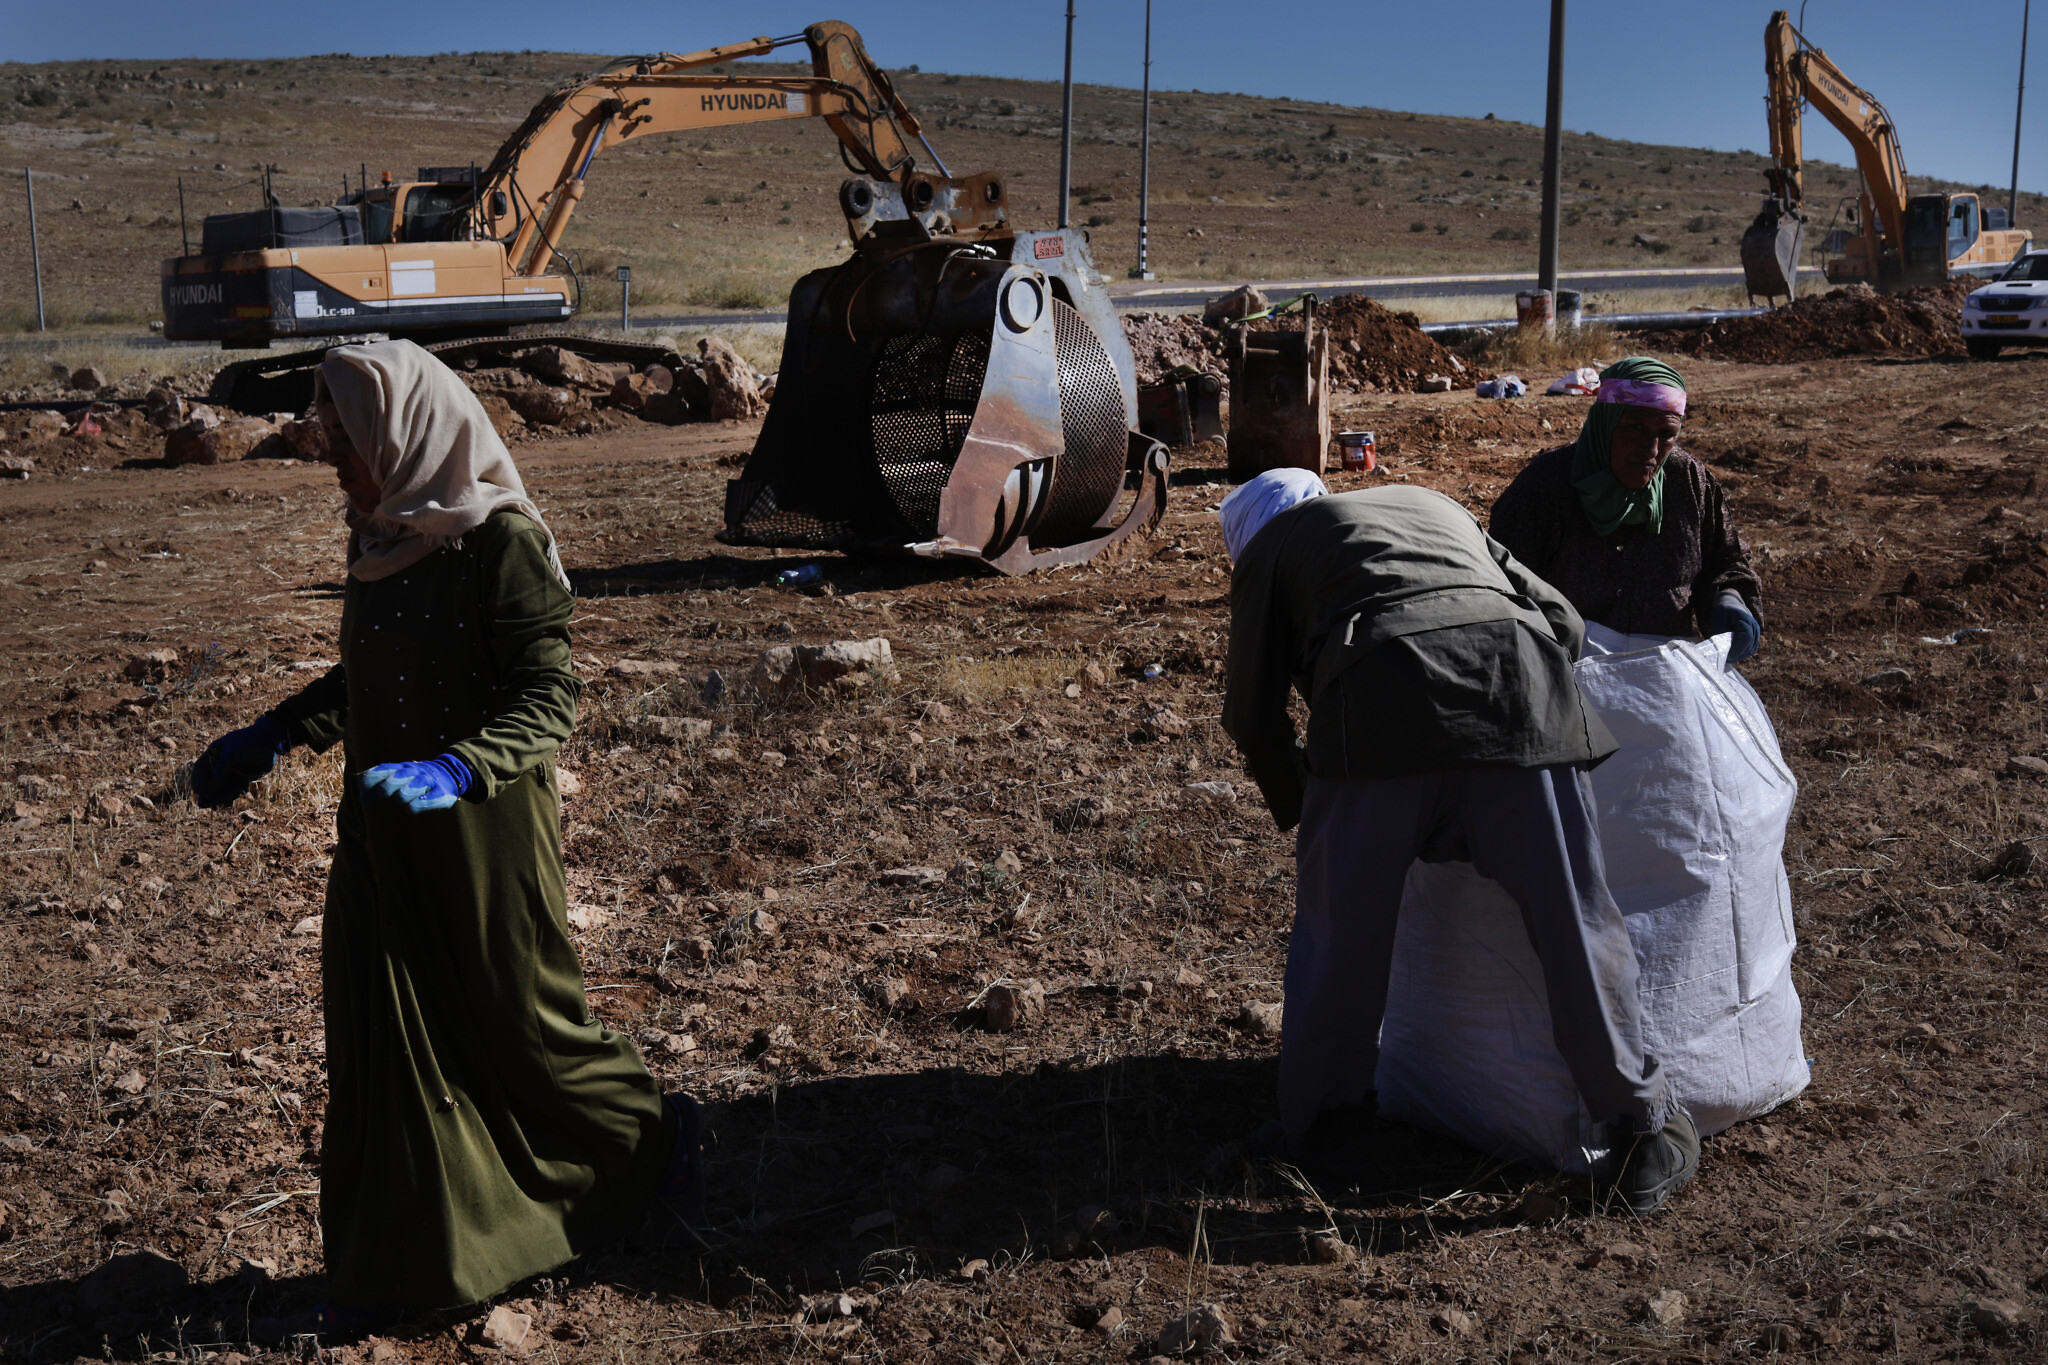 חאלד אבו-עבד וקרובת משפחה עובדים את האדמה ליד הכביש המוביל לסוסיא. מאחוריהם, הדחפורים של מקורות עובדים (צילום: אלדד רפאלי)